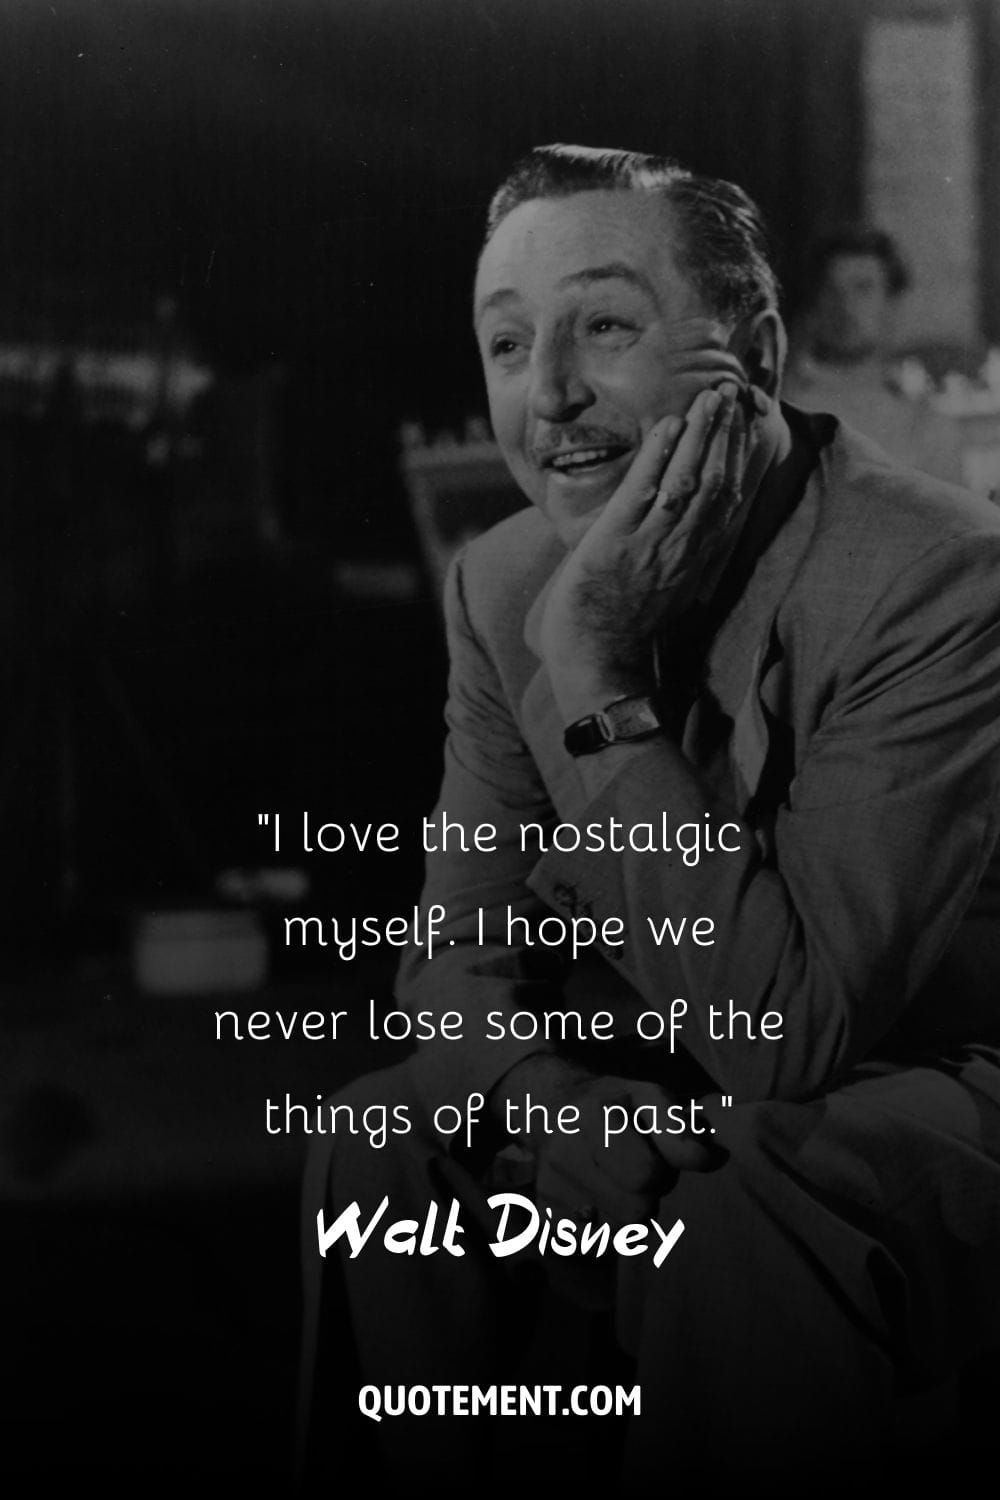 La icónica sonrisa de Walt Disney capta su espíritu creativo